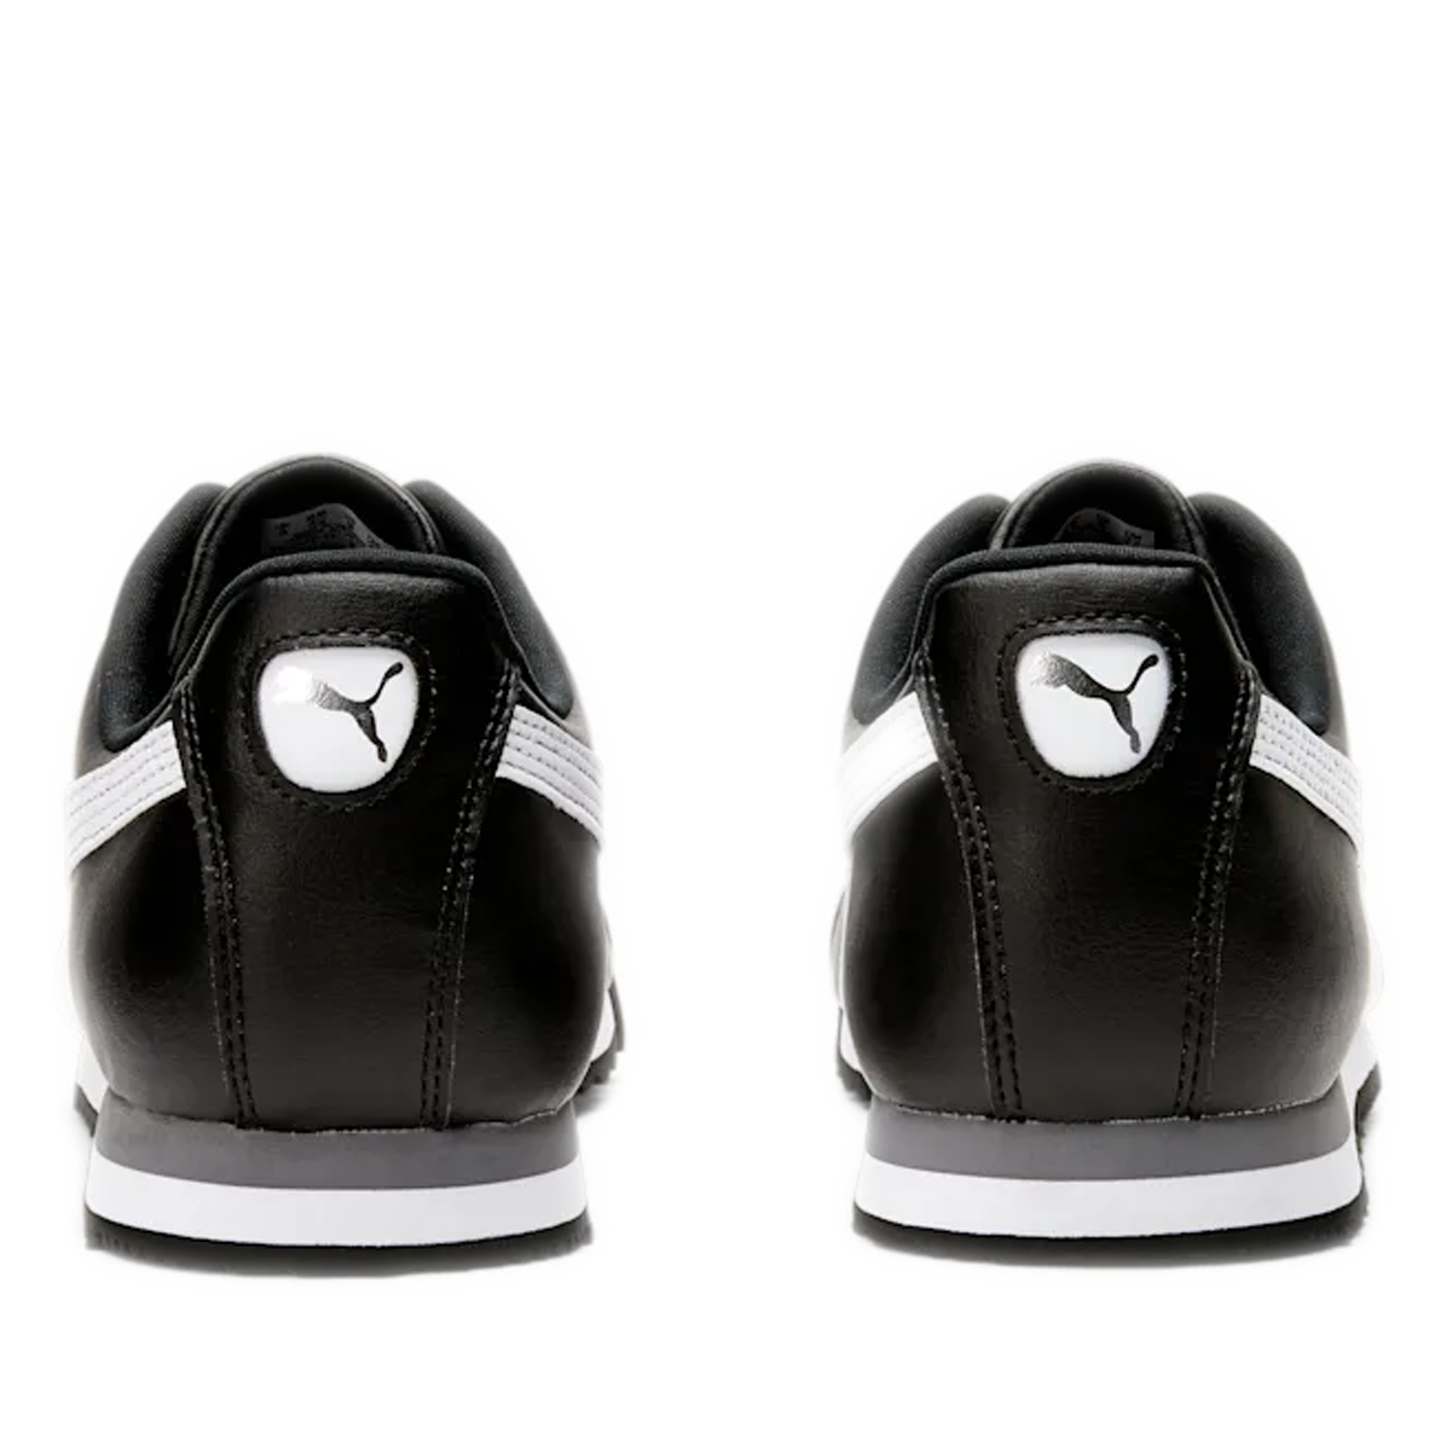 Men's Puma Roma Basic Shoes - Black/ White